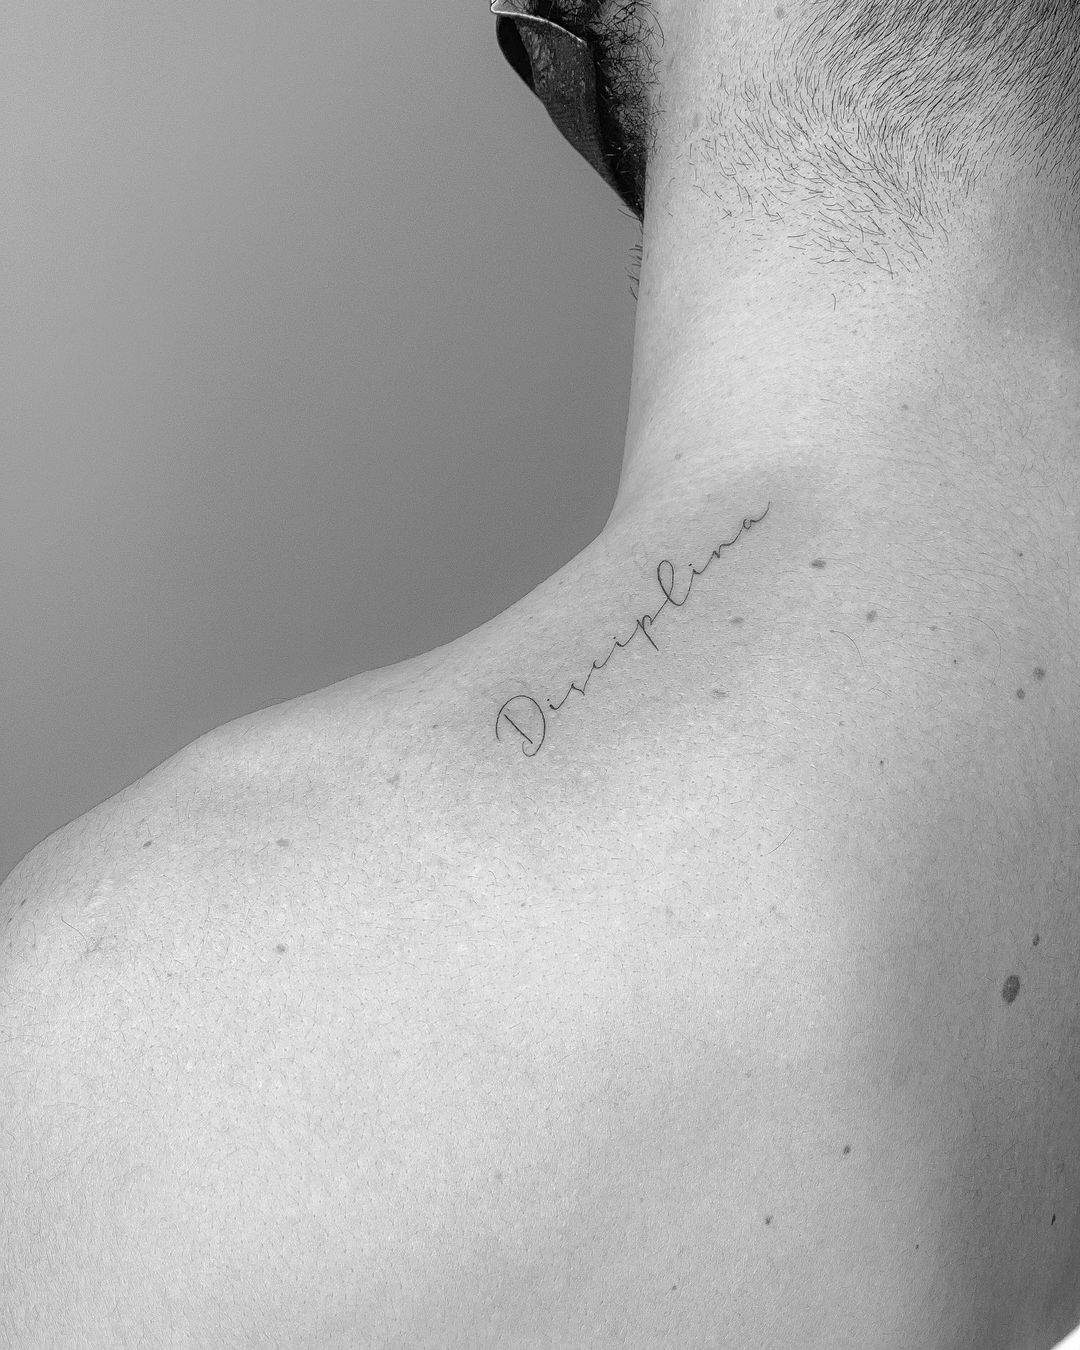 La palabra ‘disciplina’ tatuada sobre el hombro